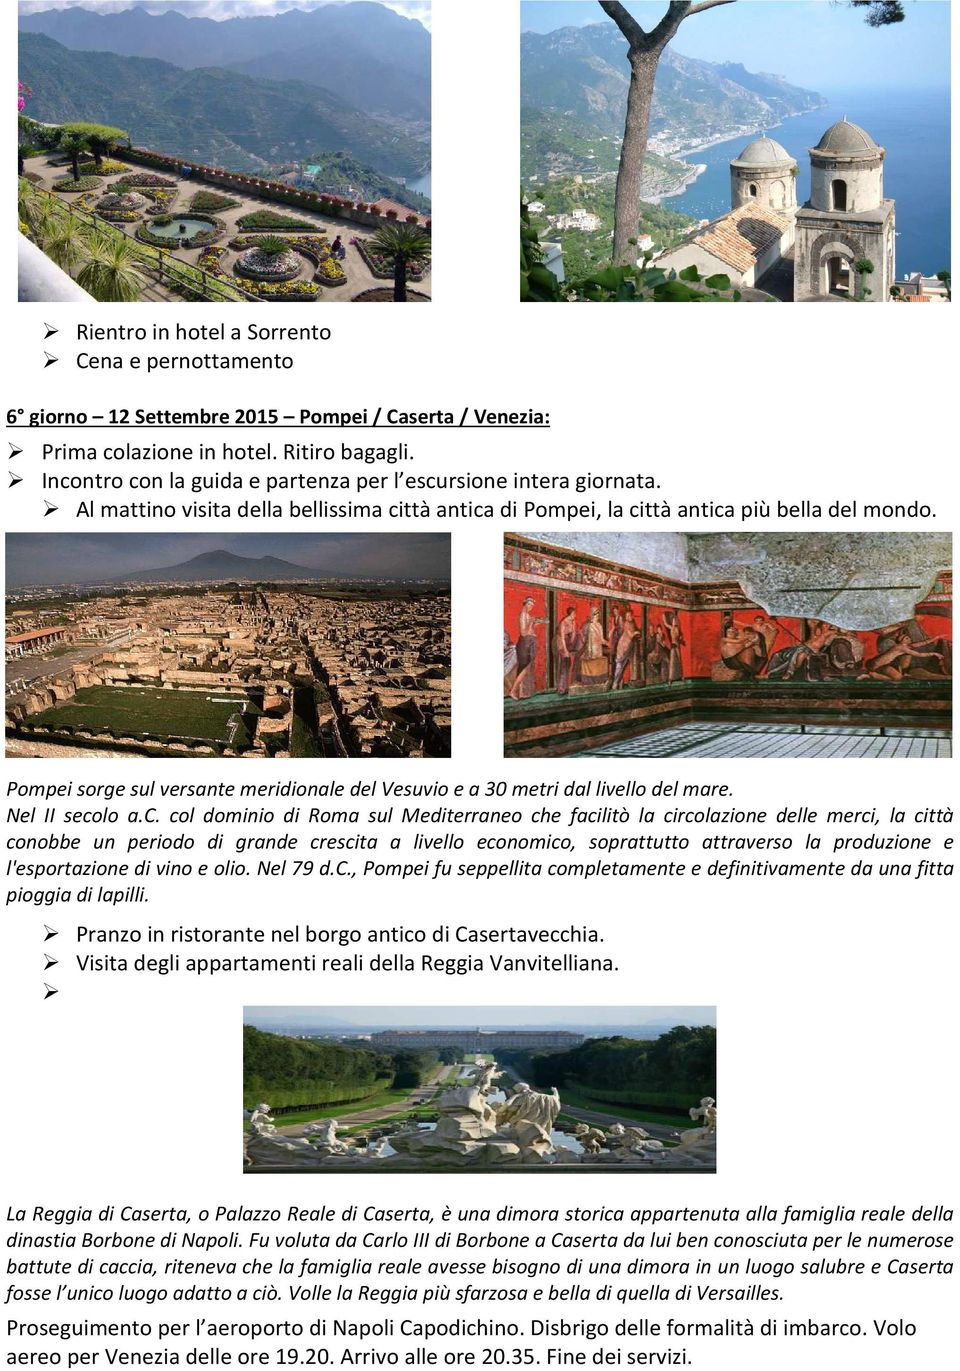 Pompei sorge sul versante meridionale del Vesuvio e a 30 metri dal livello del mare. Nel II seco